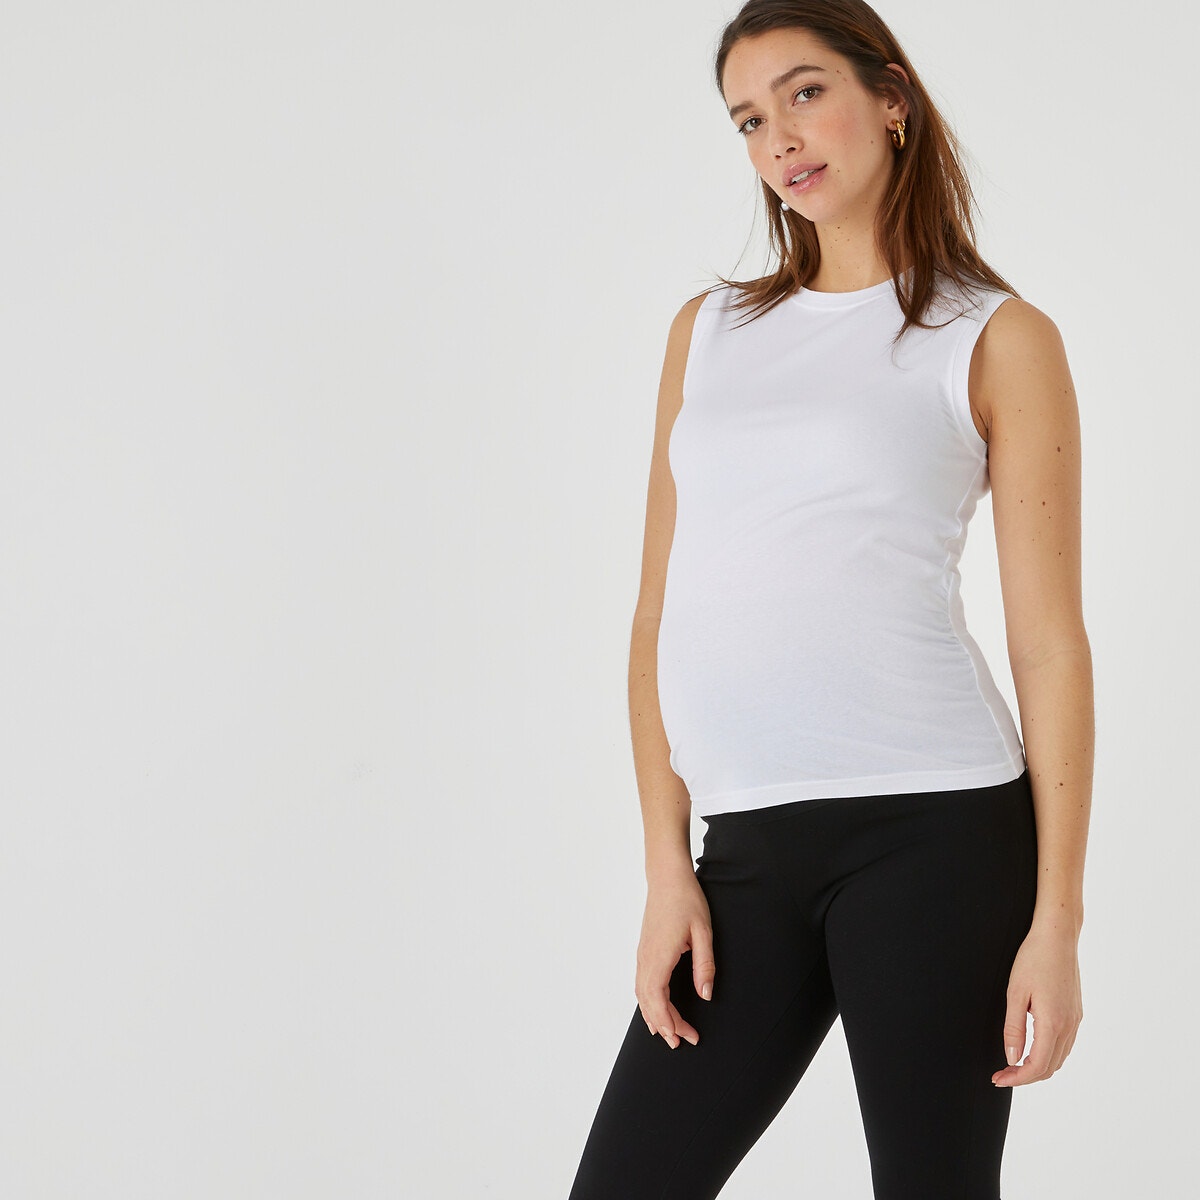 Μόδα > Γυναικεία > Ρούχα > T-shirt, αμάνικες μπλούζες > Αμάνικες μπλούζες Σετ 2 αμάνικες μπλούζες εγκυμοσύνης από οργανικό βαμβάκι